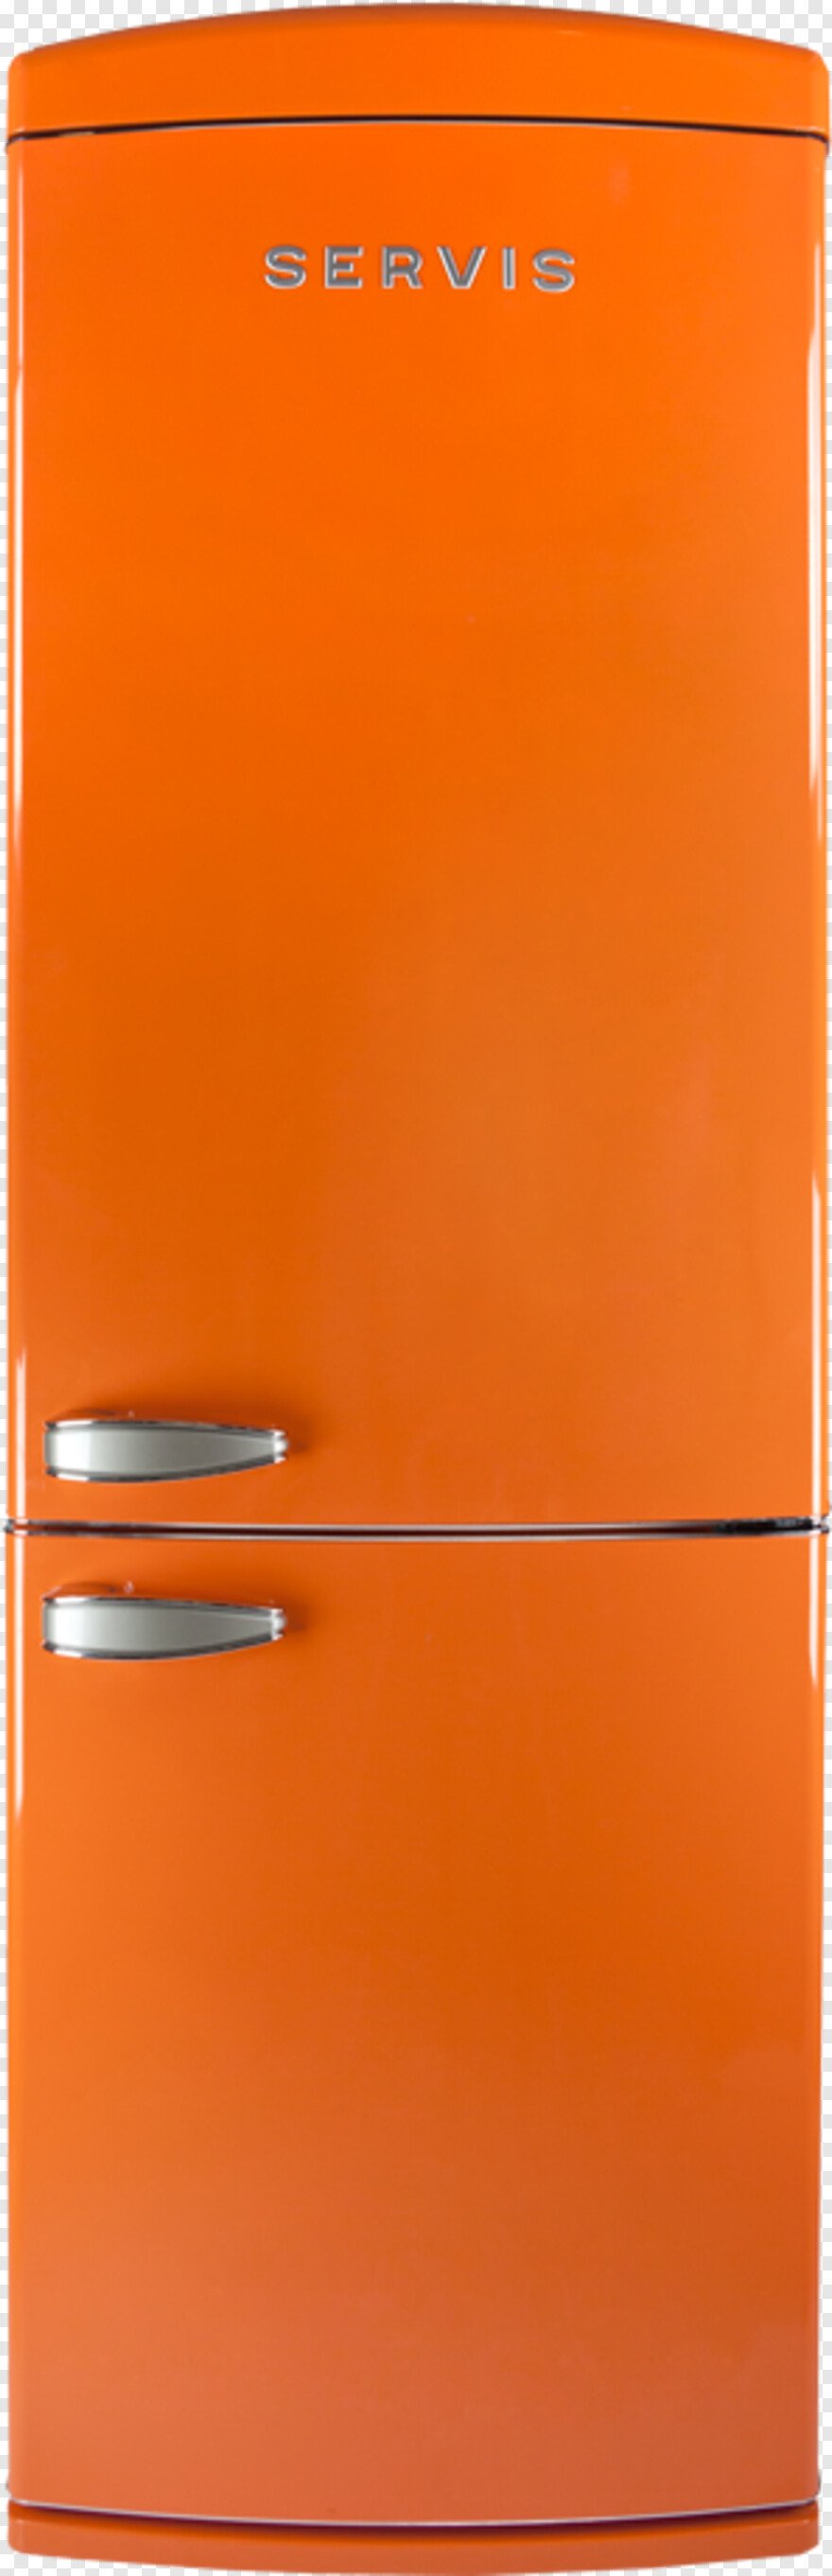 Leran Lock 3s холодильник оранжевый